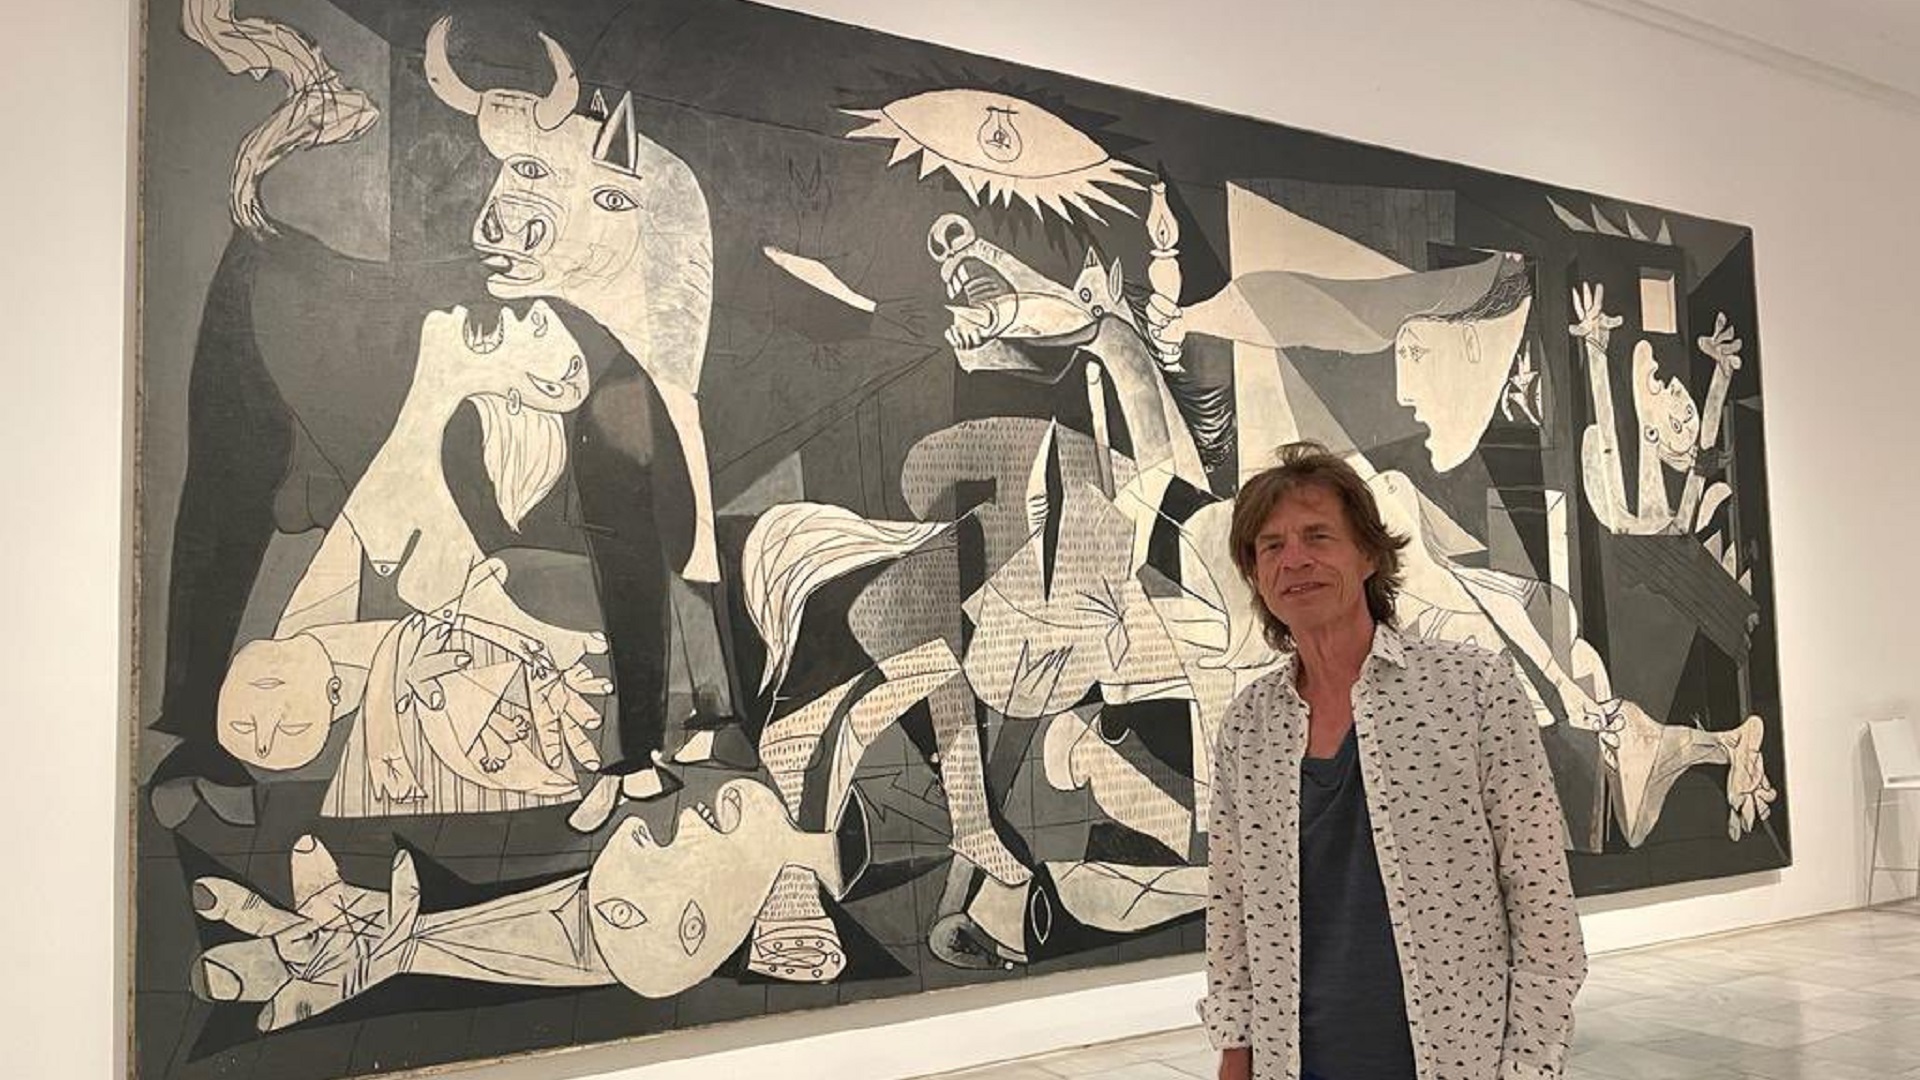 Qué dijo el Reina Sofía tras la polémica foto de Mick Jagger con el Guernica